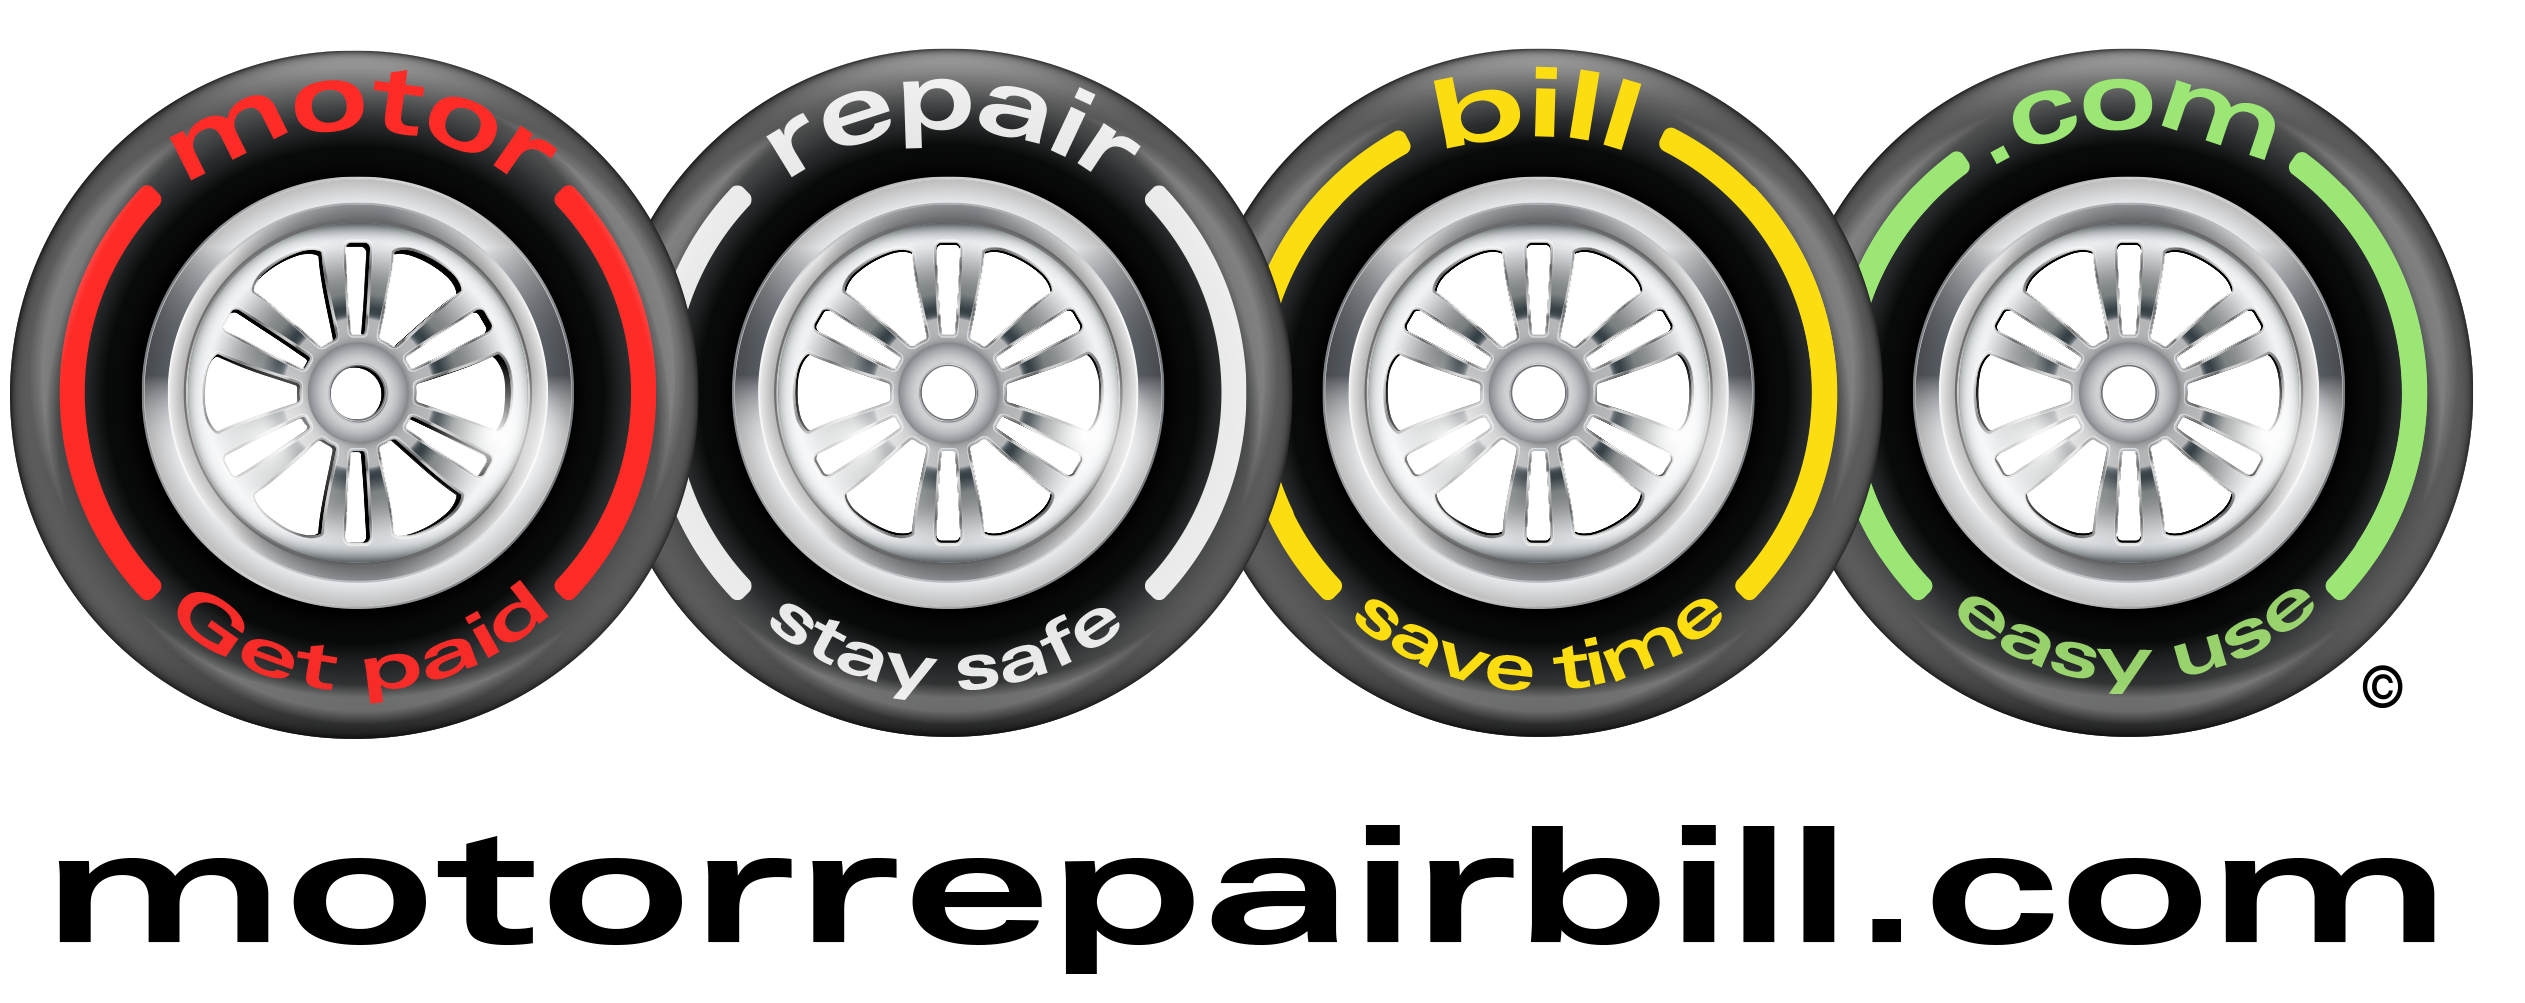 Motor Repair Bill